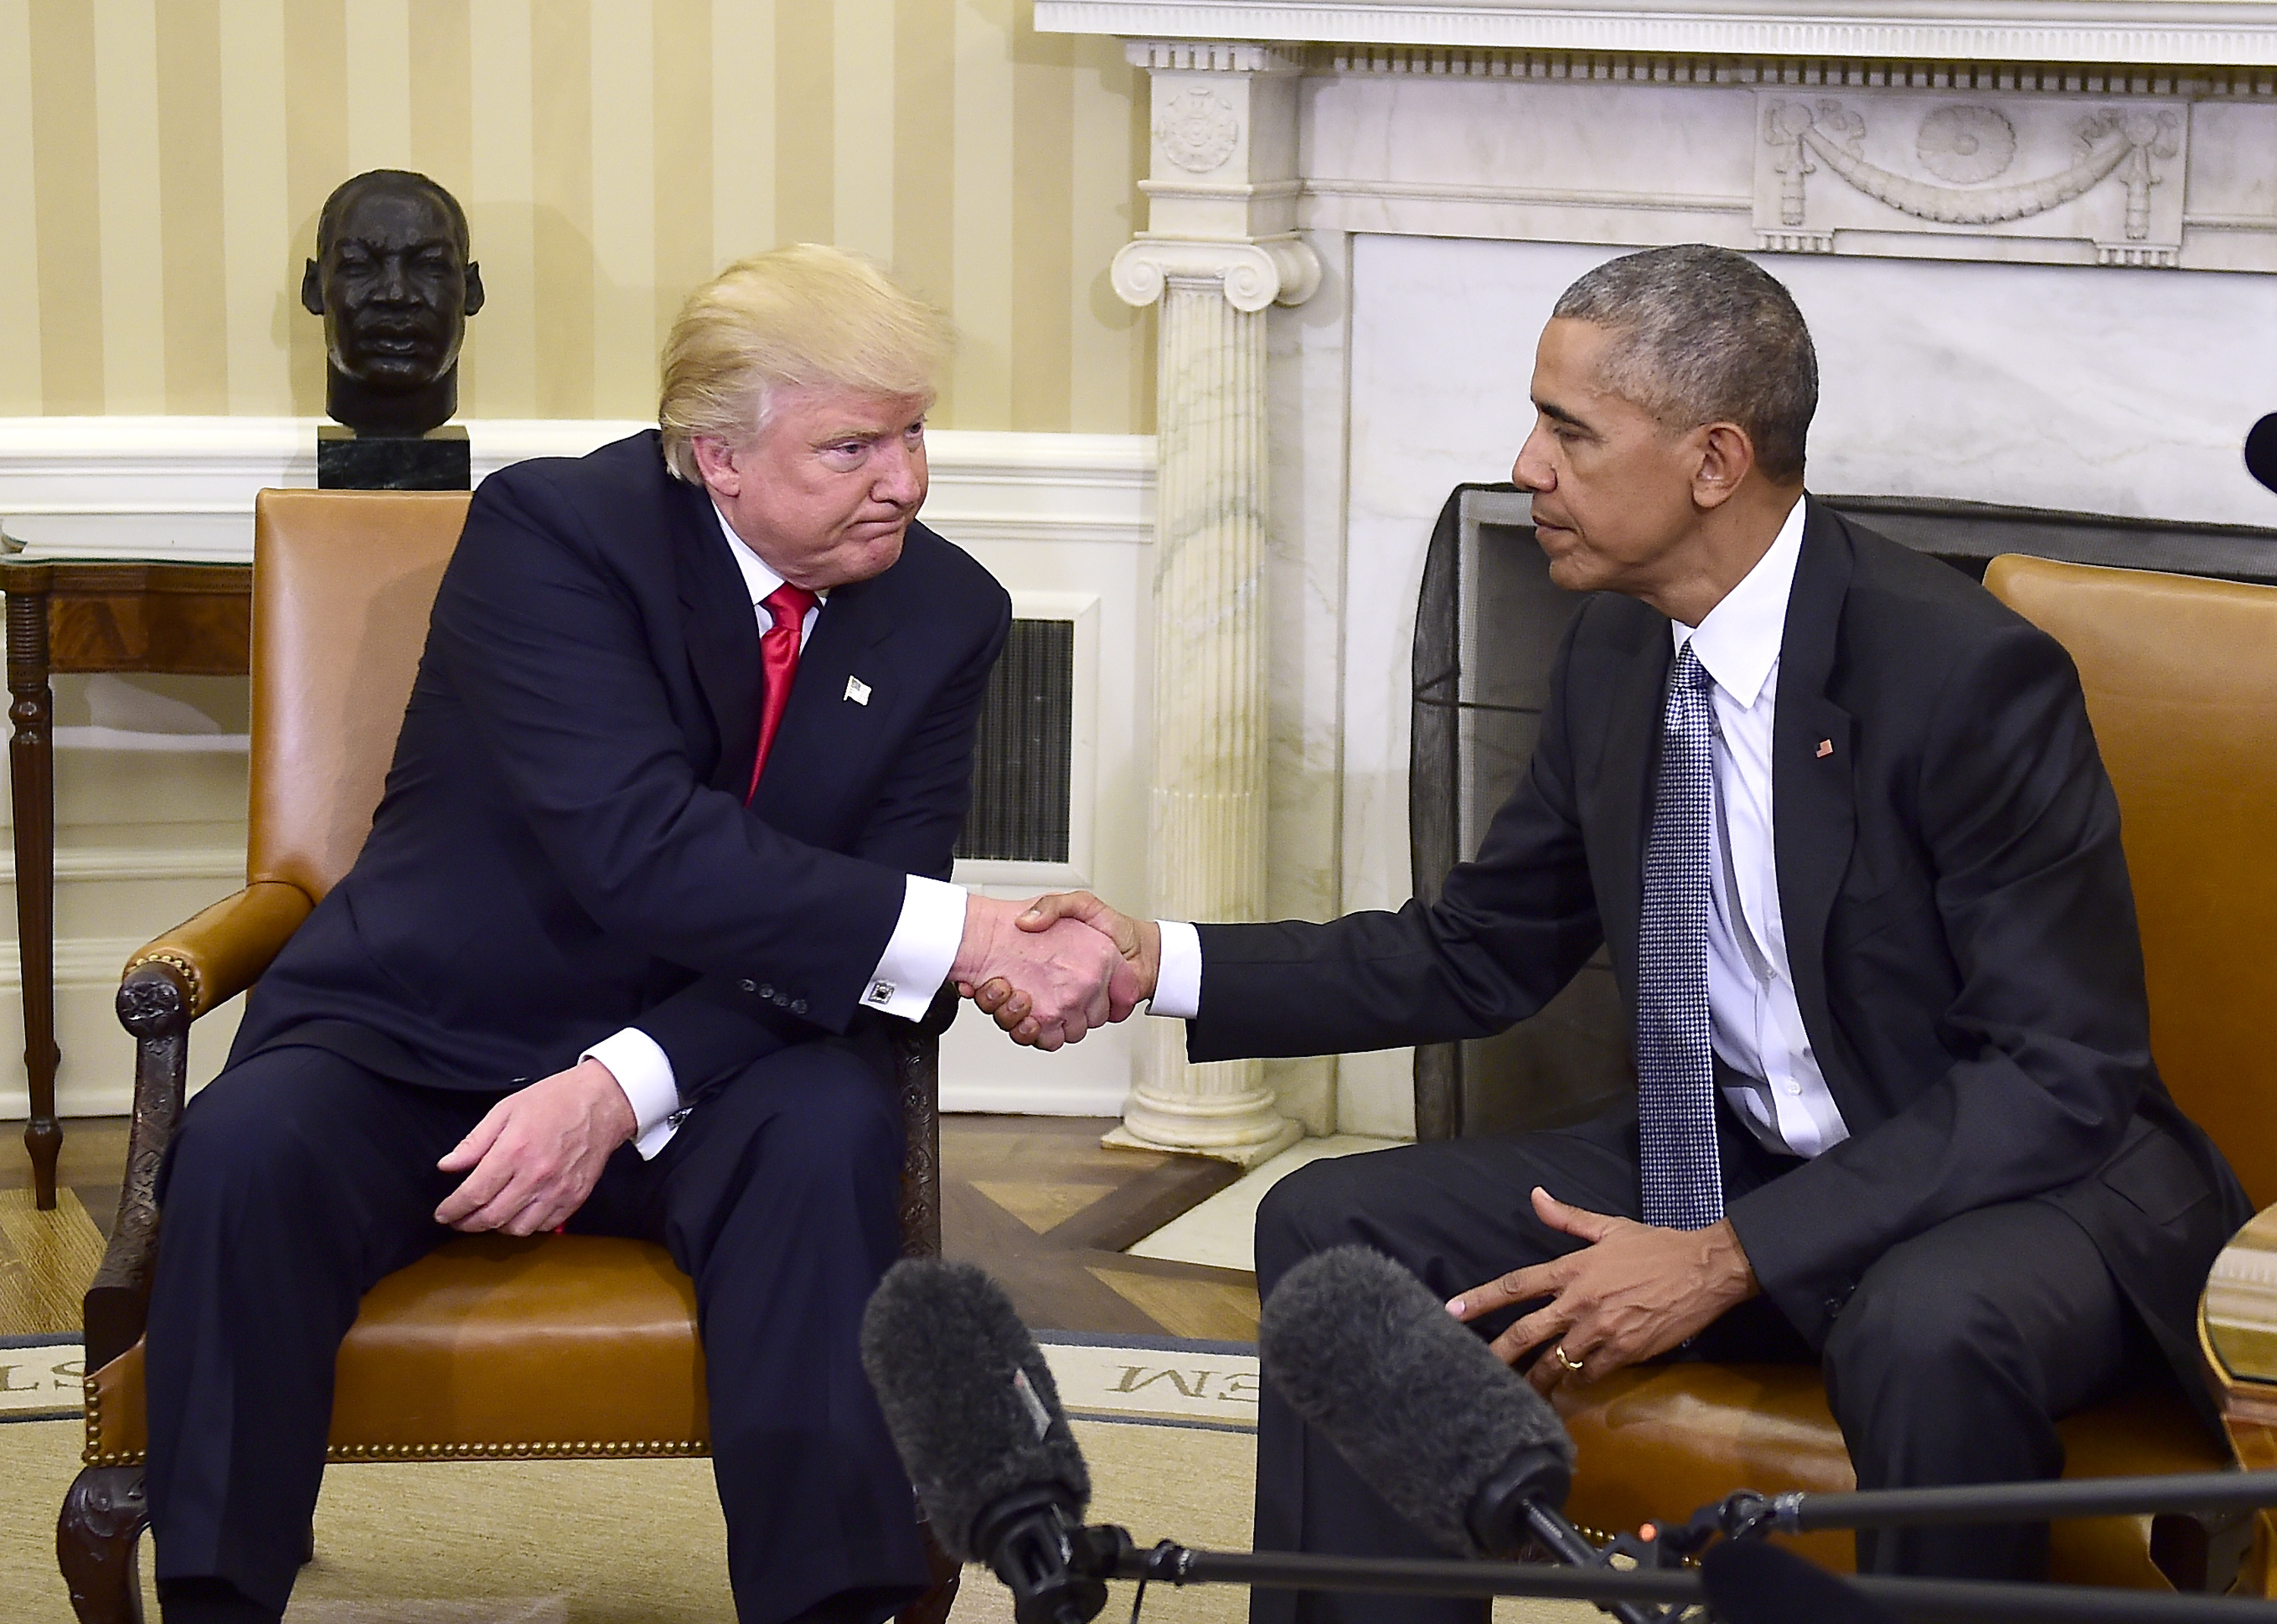 Prezydent-elekt Donald Trump i ustępujący Barack Obama na spotkaniu w Białym Domu, 10.11.2016r.